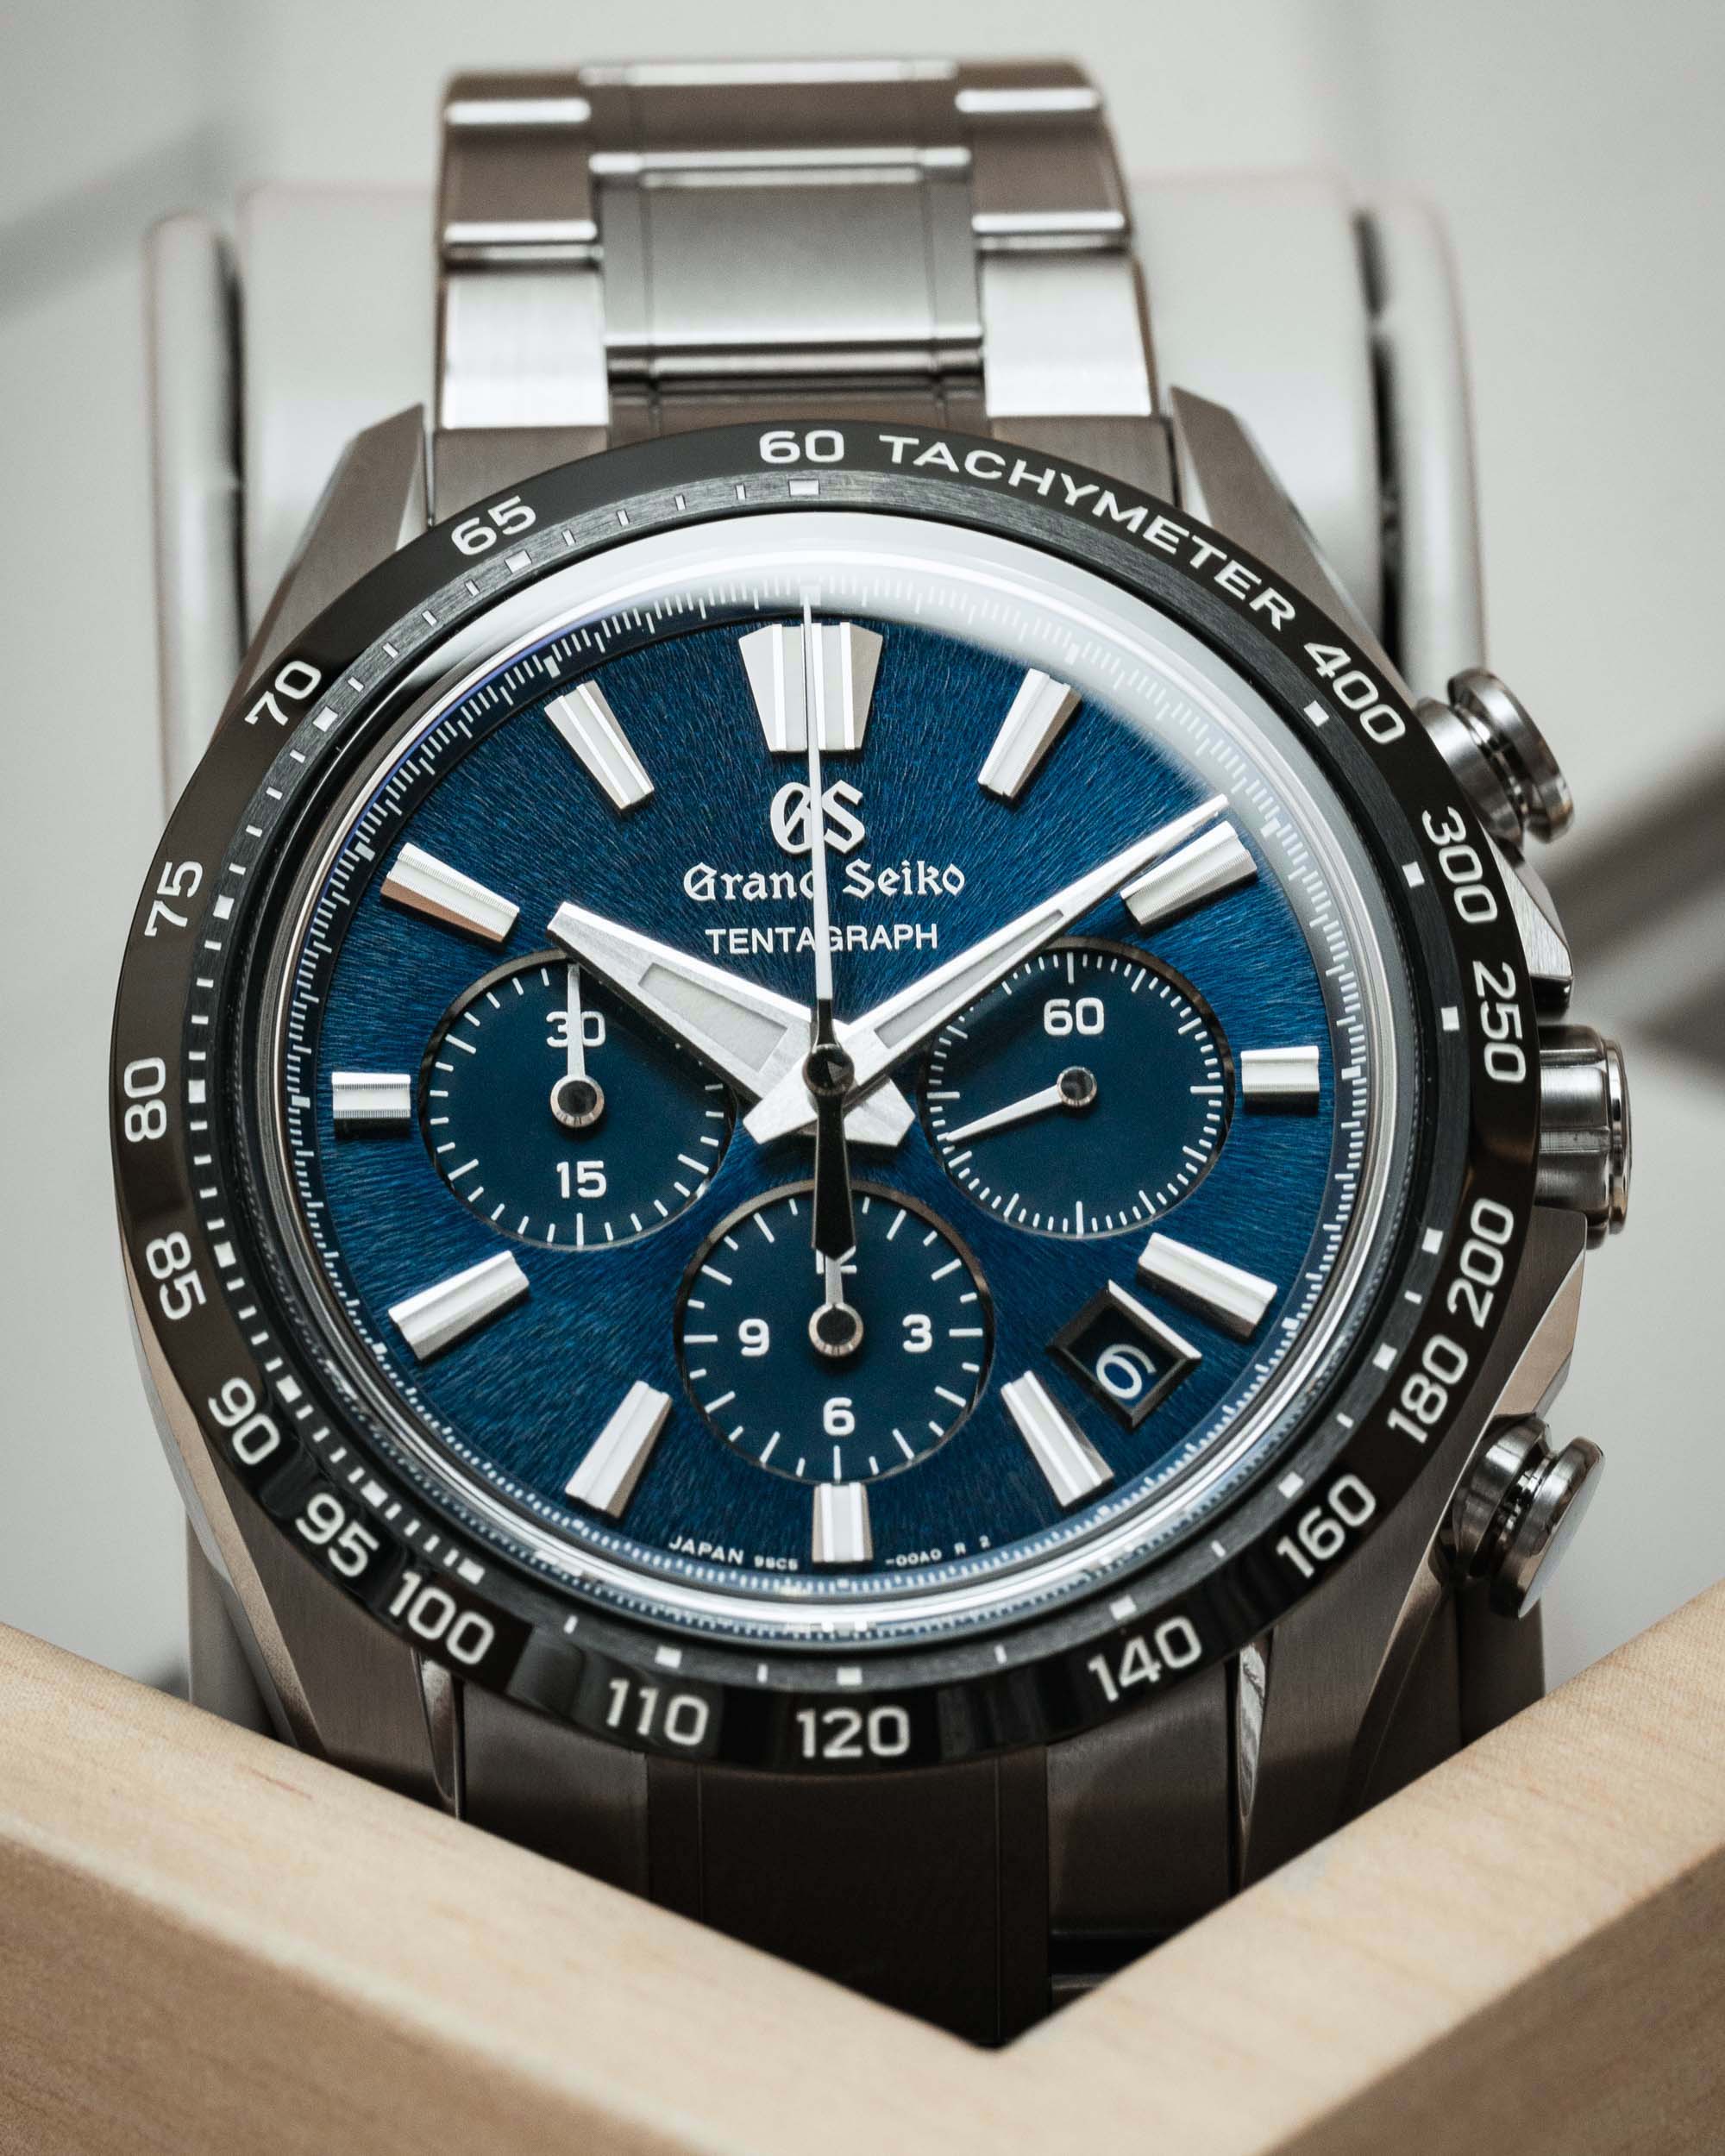 Часы Grand Seiko Tentagraph SLGC001 - первый в истории бренда механический хронограф